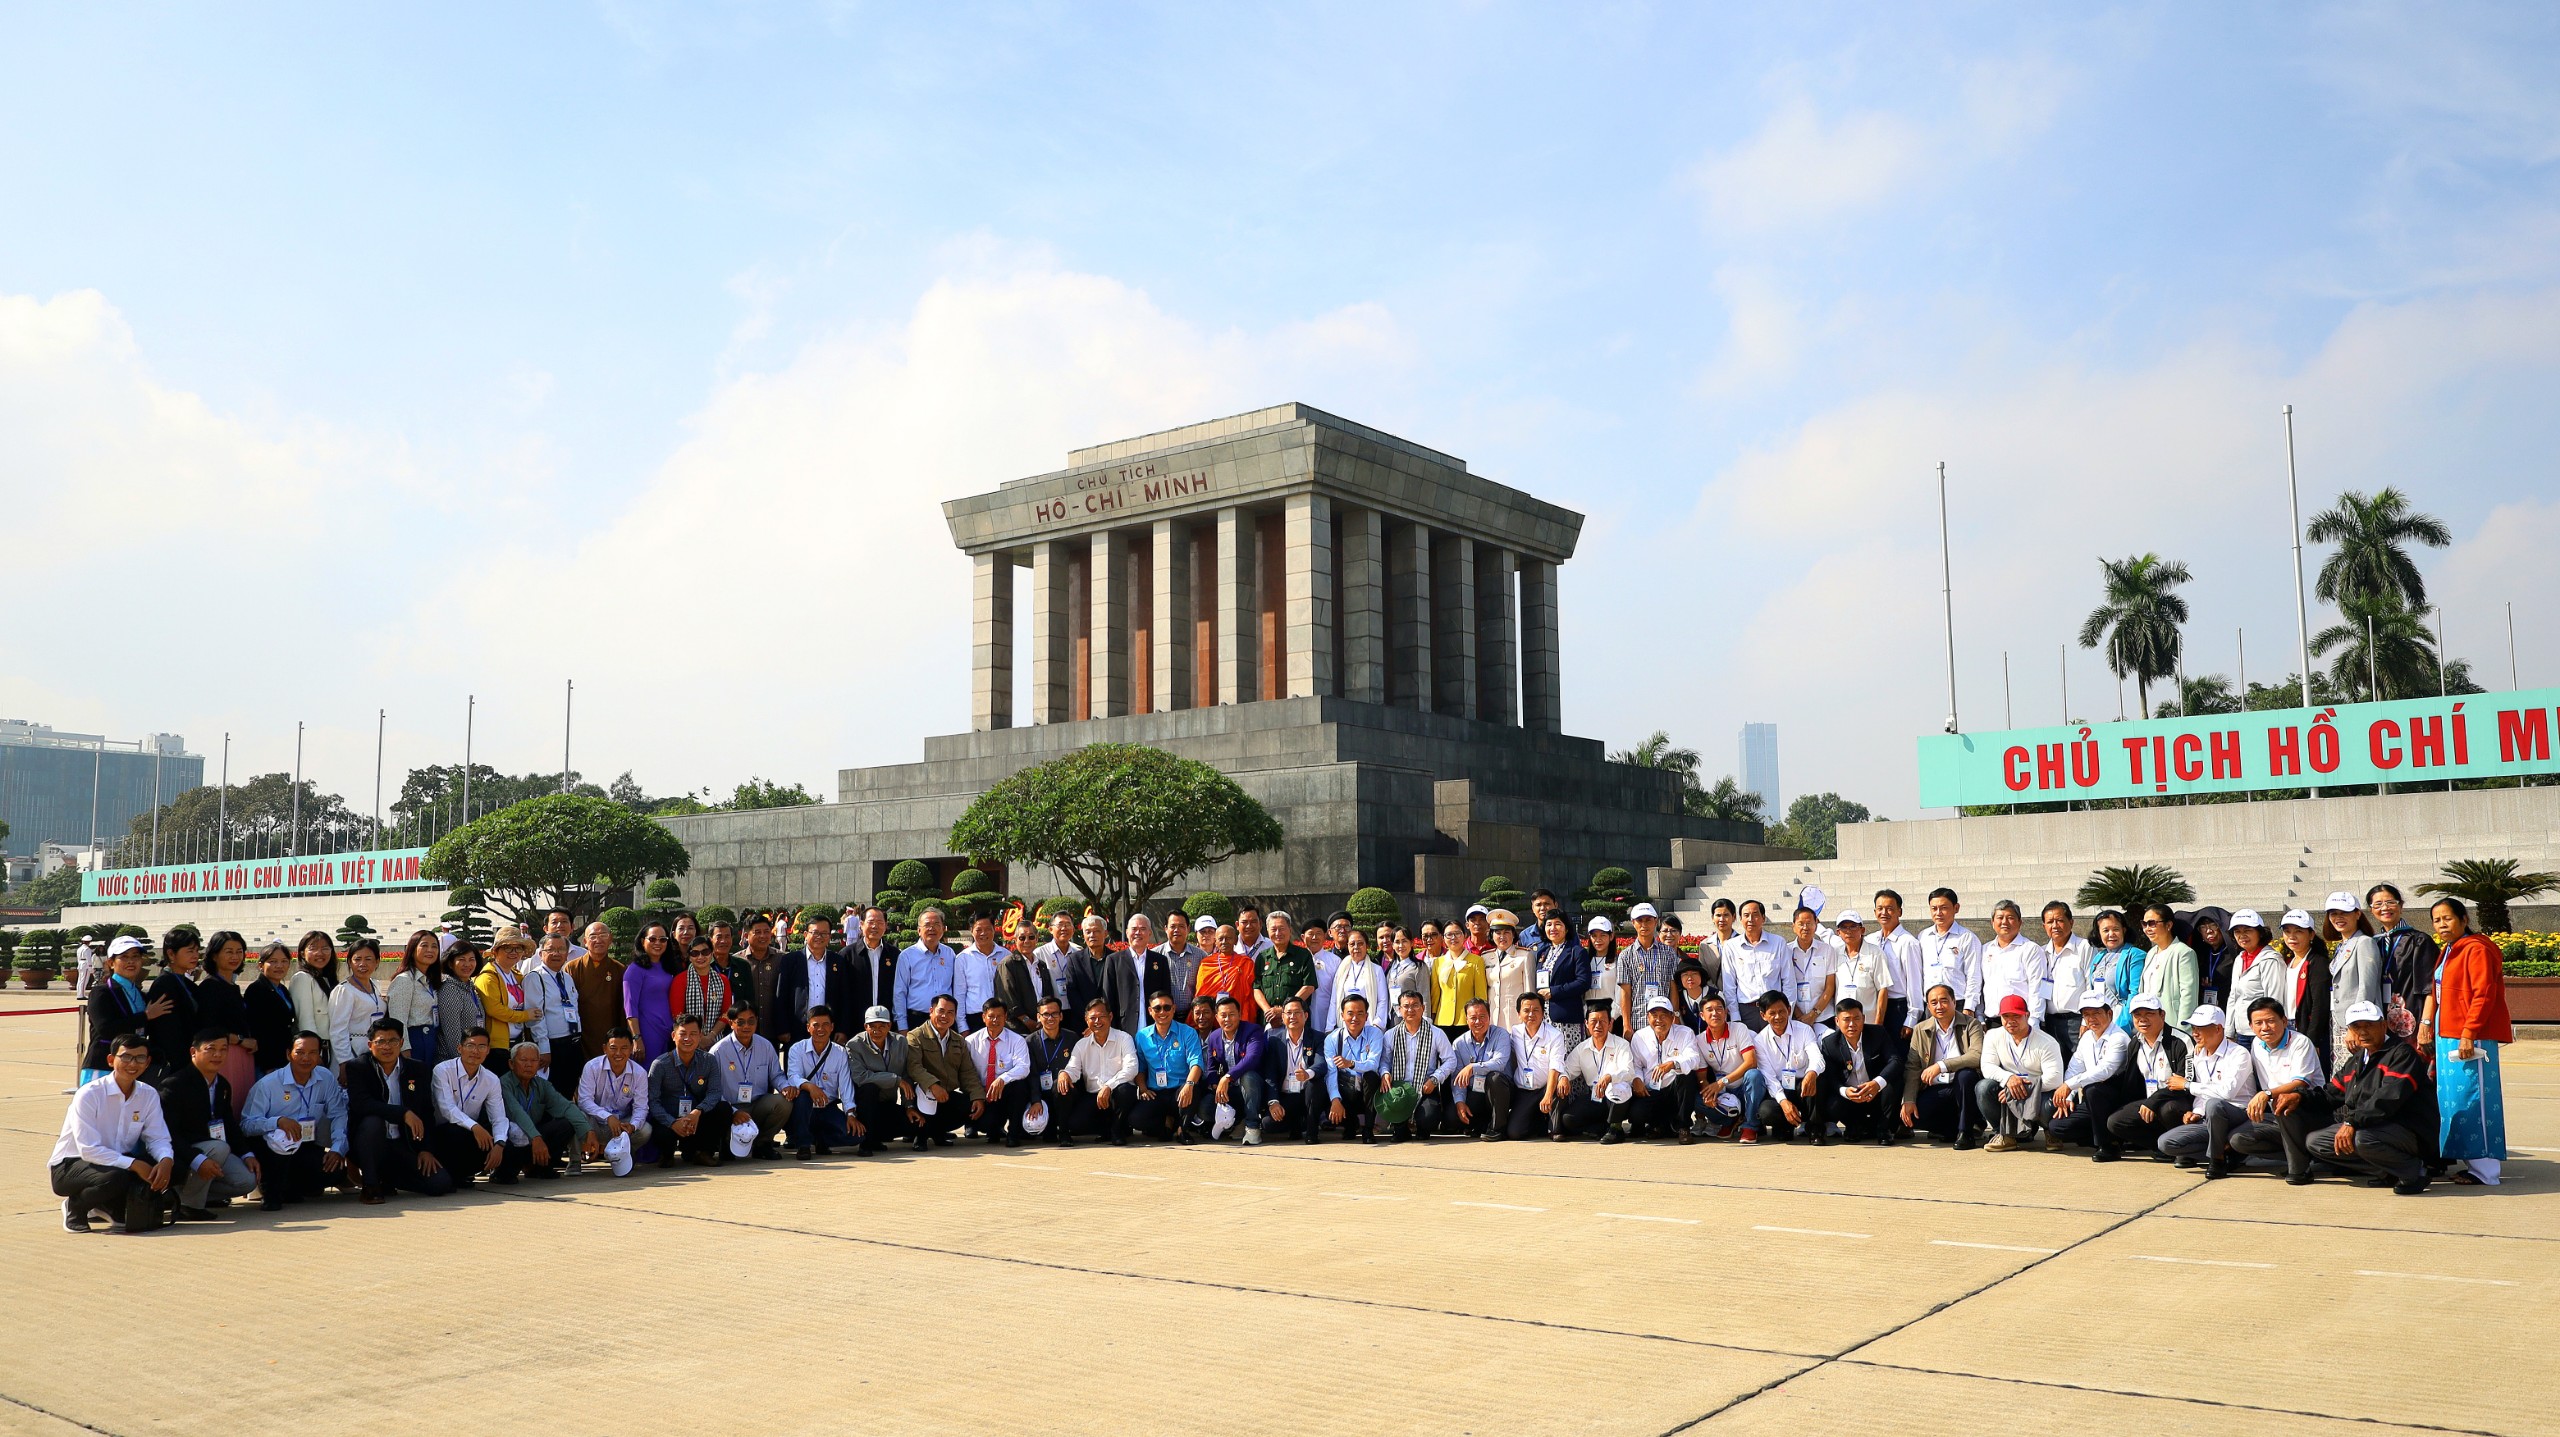 Đoàn đại biểu điển hình tiêu biểu có nhiều đóng góp trong quá trình xây dựng và phát triển TP. Cần Thơ chụp hình lưu niệm tại Lăng Chủ tịch Hồ Chí Minh.